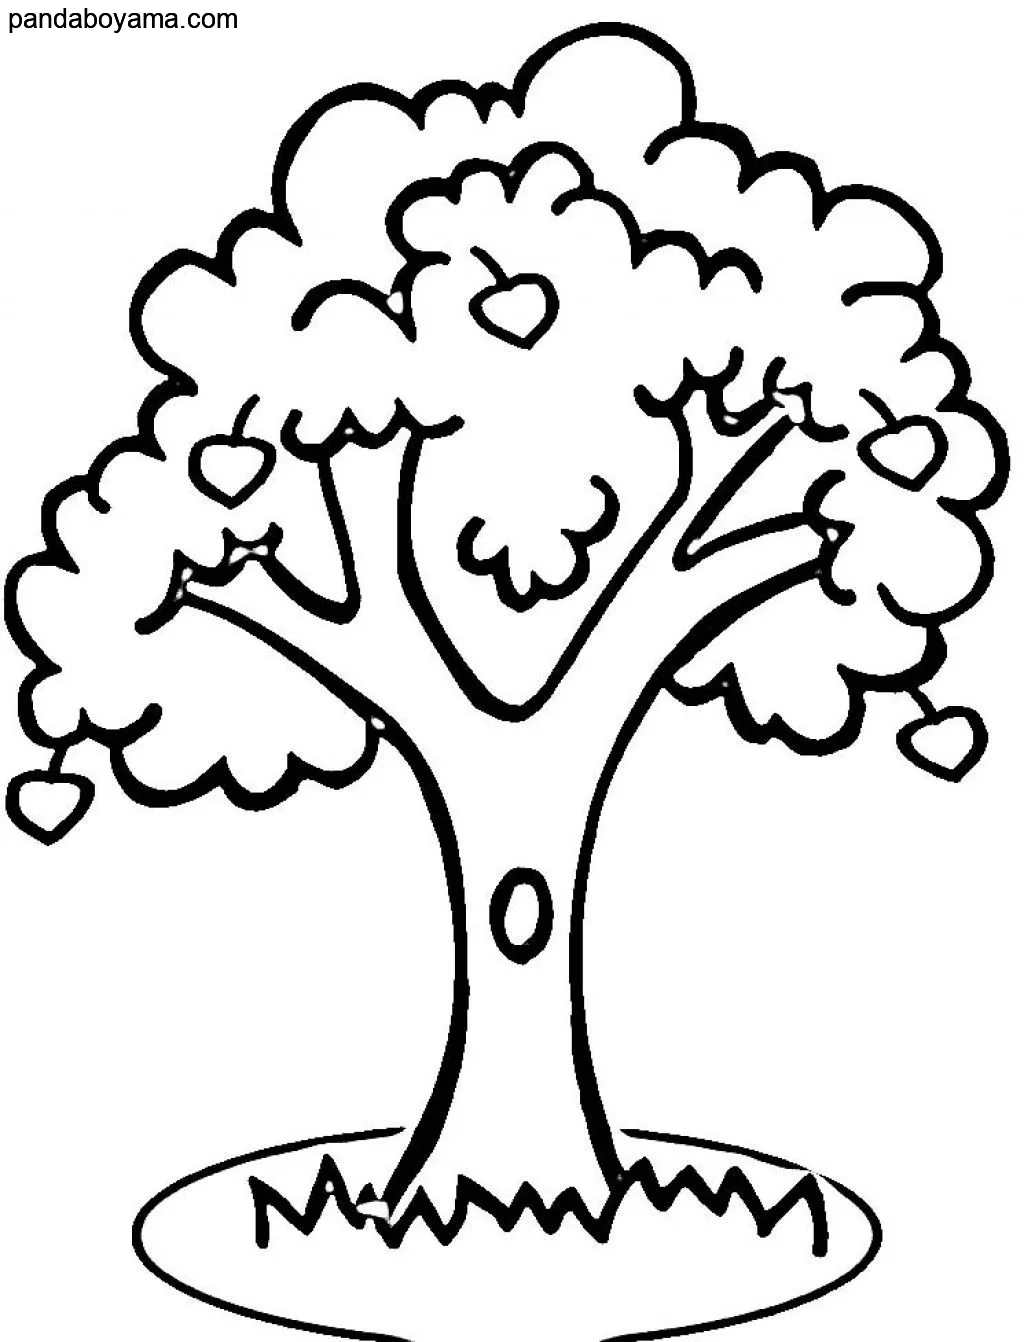 Çocuklar için Ağaç boyama sayfası